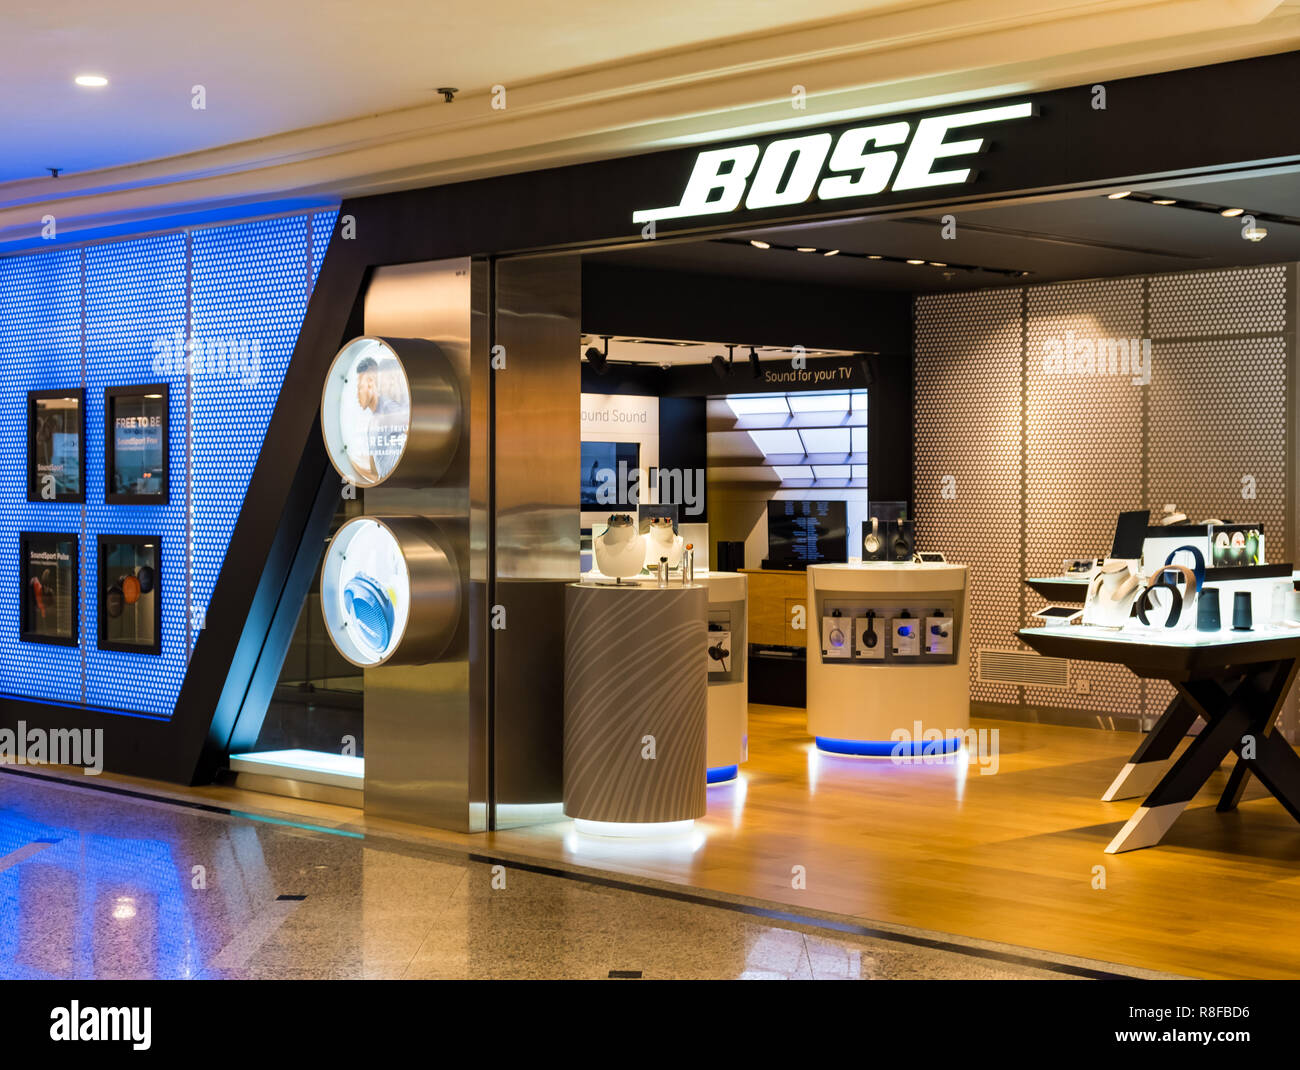 Hong Kong, April 7, 2019: Bose store in Hong Kong Stock Photo - Alamy